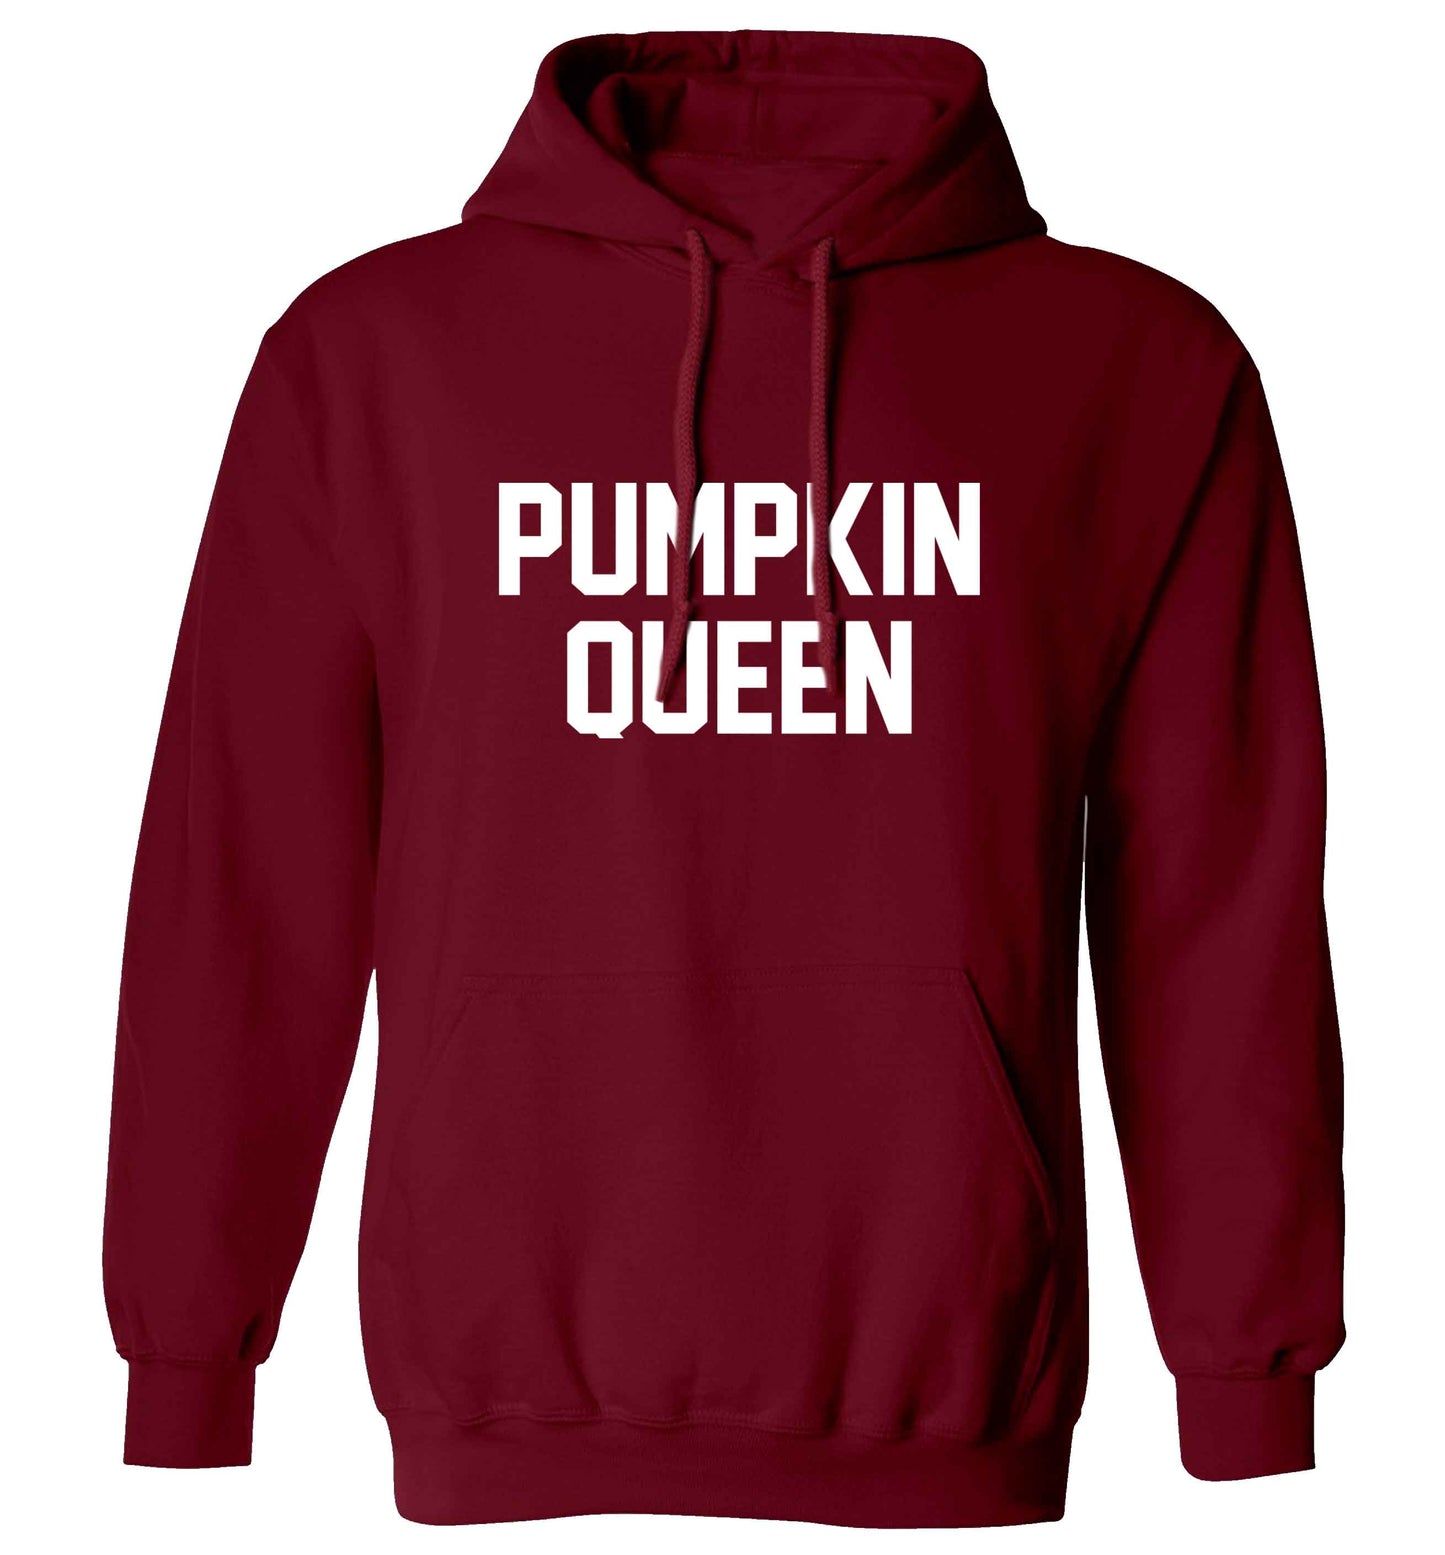 Pumpkin Queen adults unisex maroon hoodie 2XL